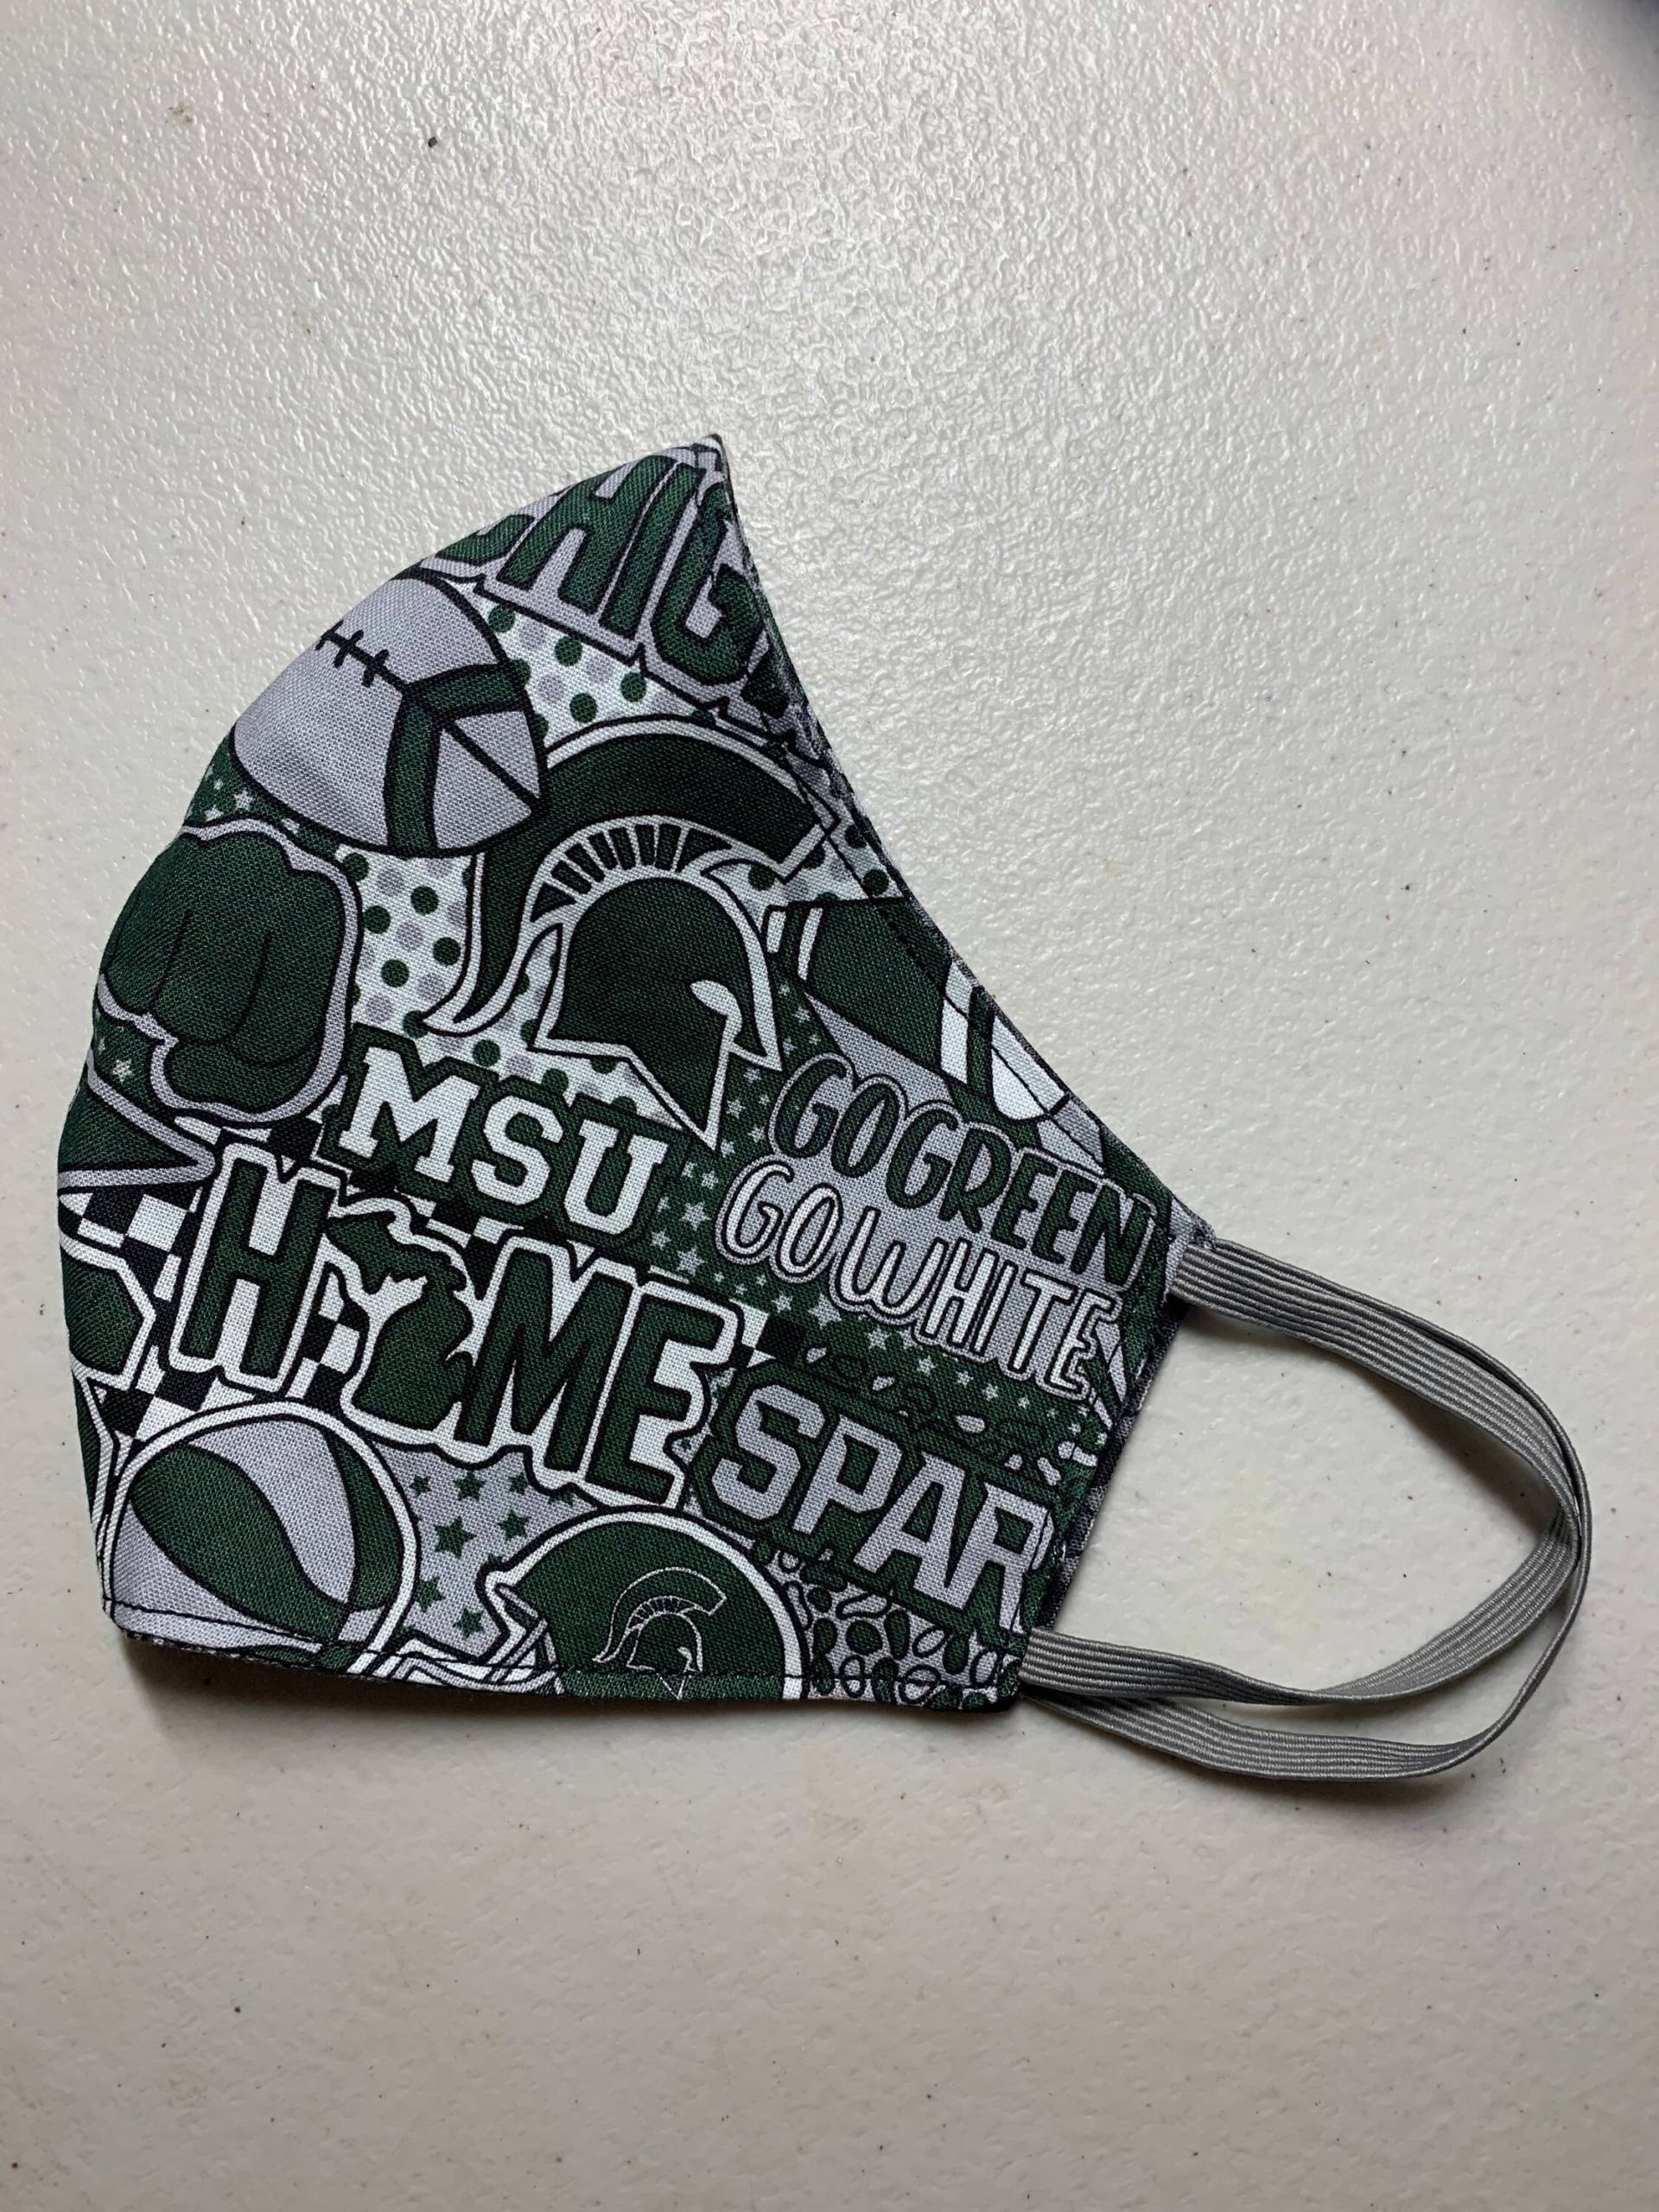 Michigan State Spartans Maske von SportsCollectibles30